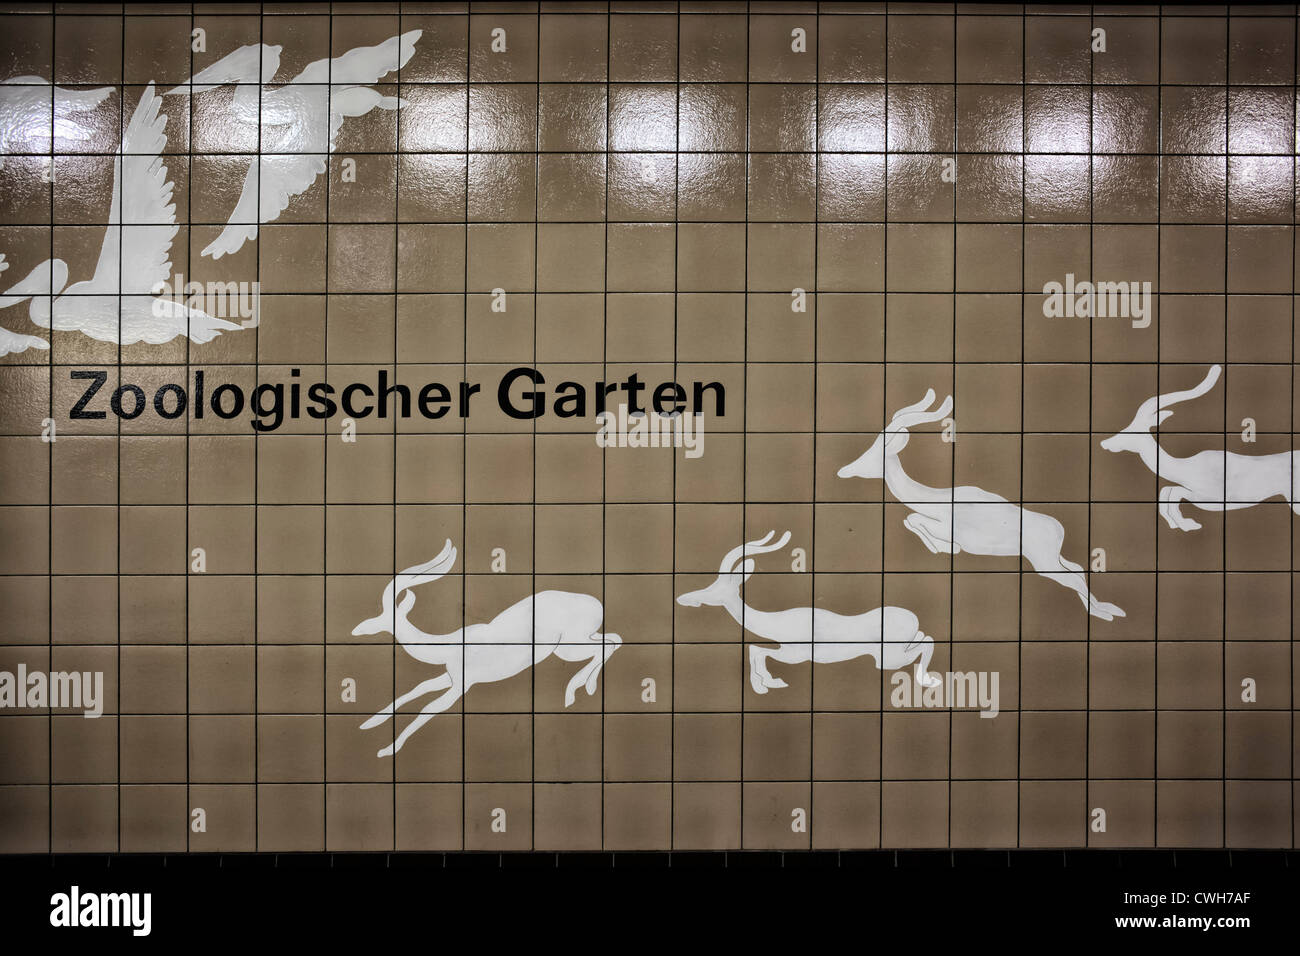 Zoologischer Garten underground station Stock Photo